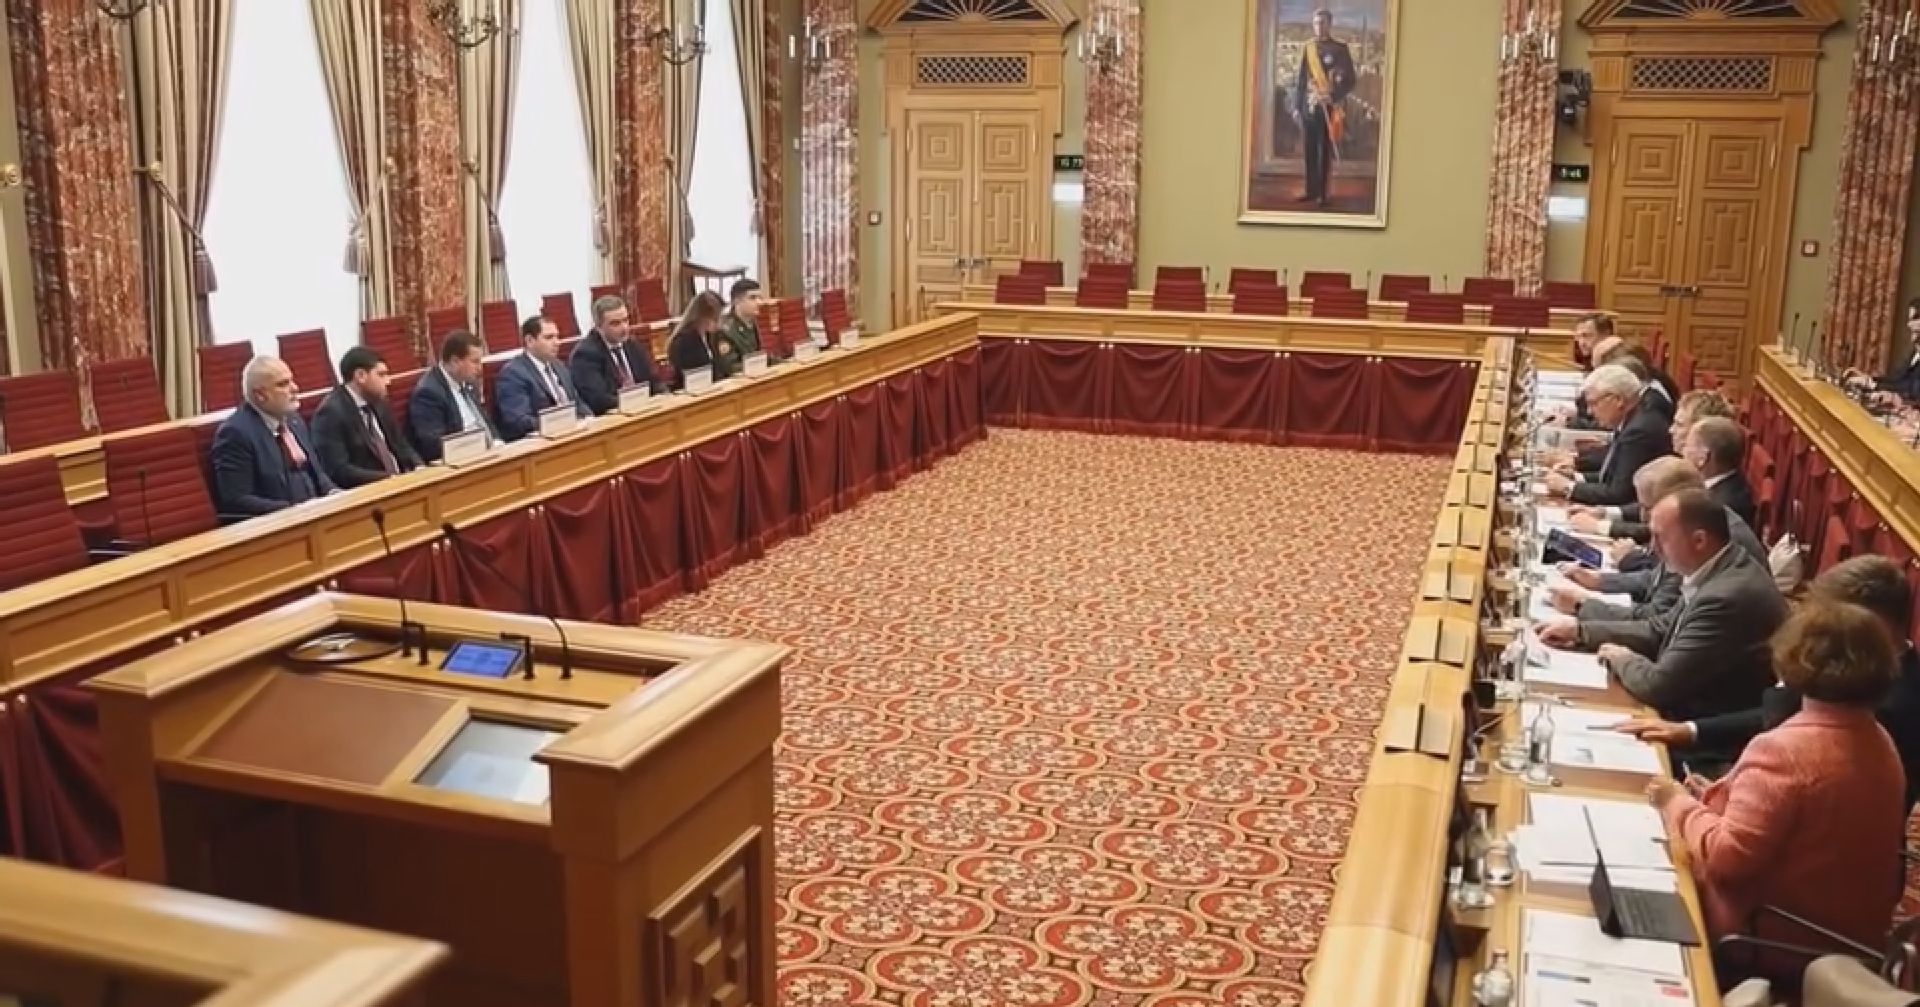 Պապիկյանի հանդիպումը Լյուքսեմբուրգի Մեծ Դքսության խորհրդարանի նախագահի և պաշտպանության նախարարի հետ՝ տեսանյութով 